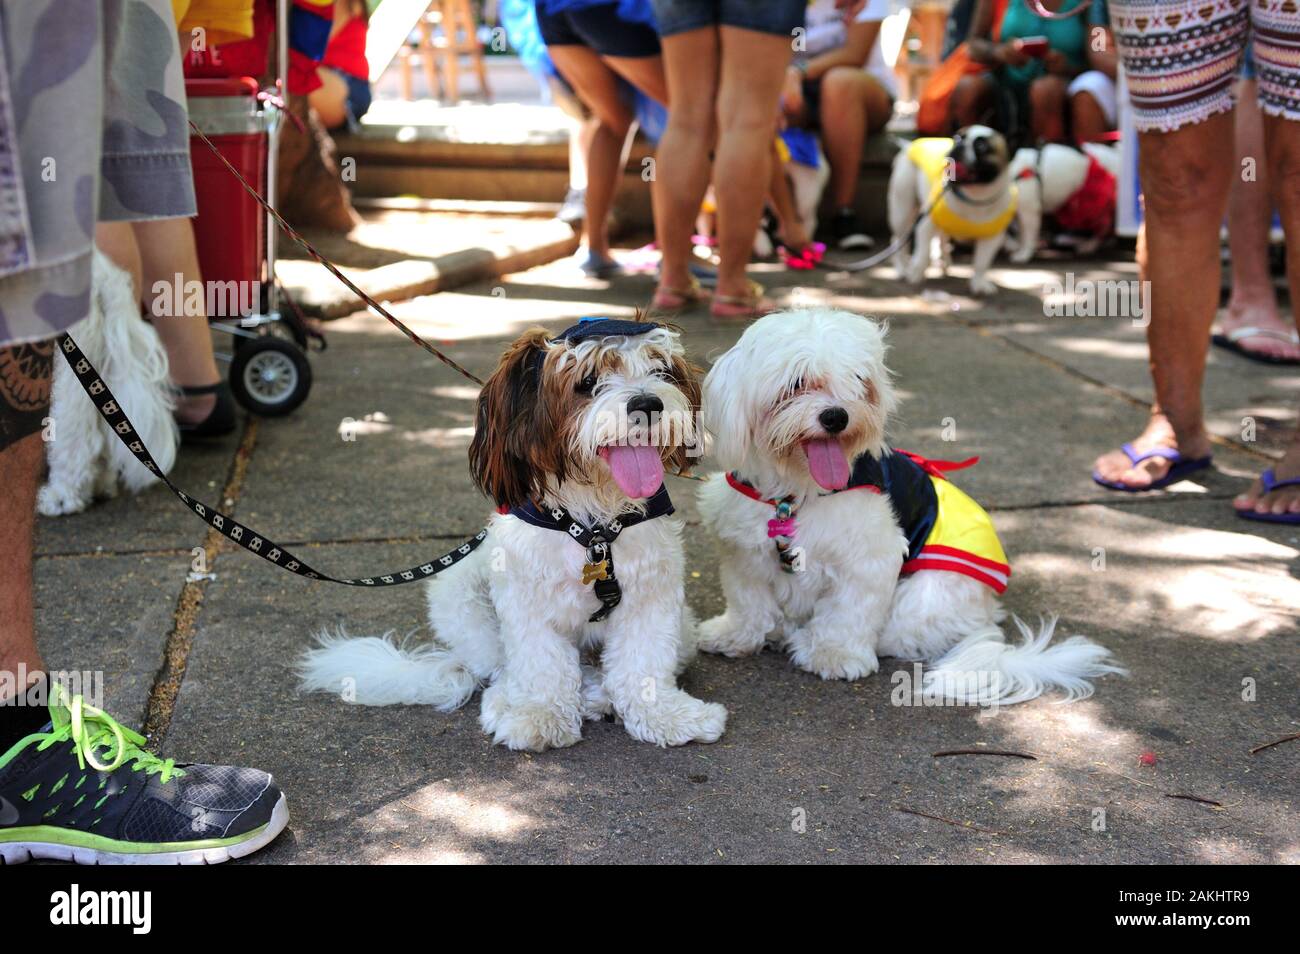 Carnaval, Rio de Janeiro - le 23 février 2019 : les propriétaires de chiens rencontrez jusqu'à l'assemblée annuelle de l'Blocao partie, lorsque l'envie d'habiller les animaux sont l'objet de la journée. Banque D'Images